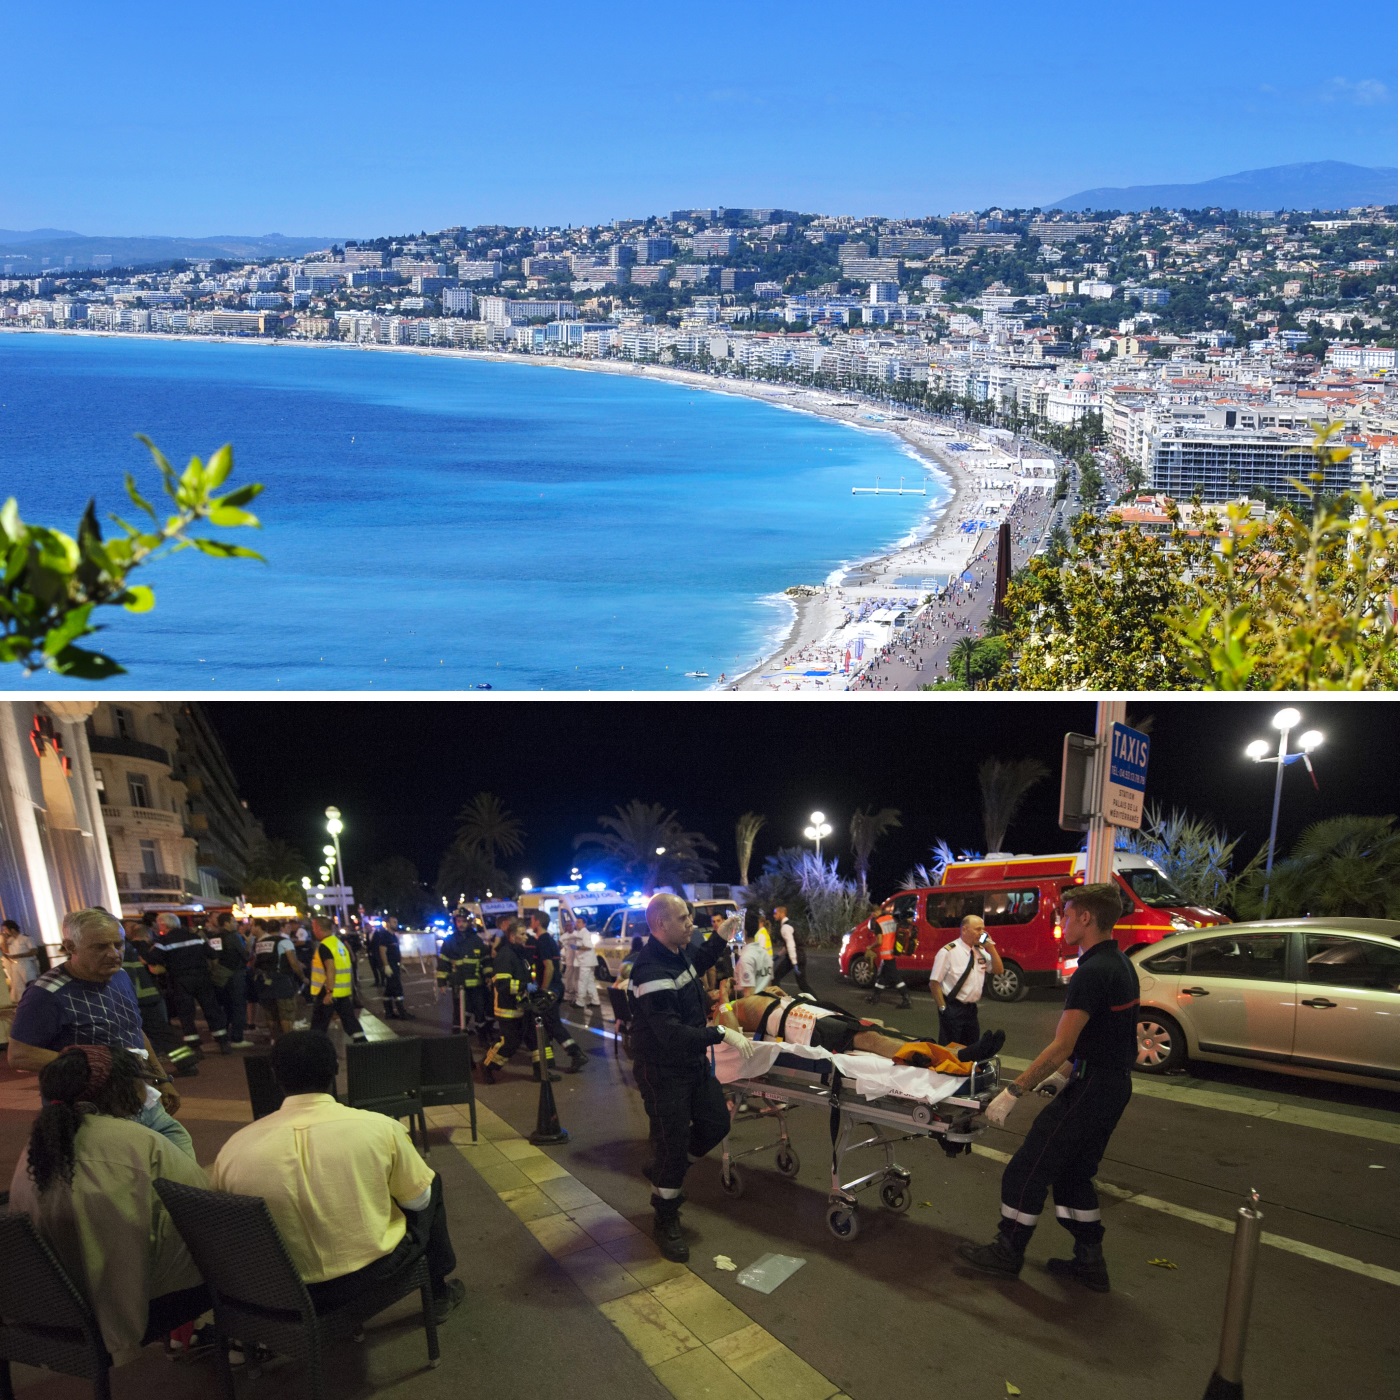 Атентатът в Ница, който отне вчера живота на над 80 души, пометени от камион на Английската алея, нанесе удар върху най-емблематичното място в град, известен в цял свят като столицата на Лазурния бряг и пети по брой жители във Франция